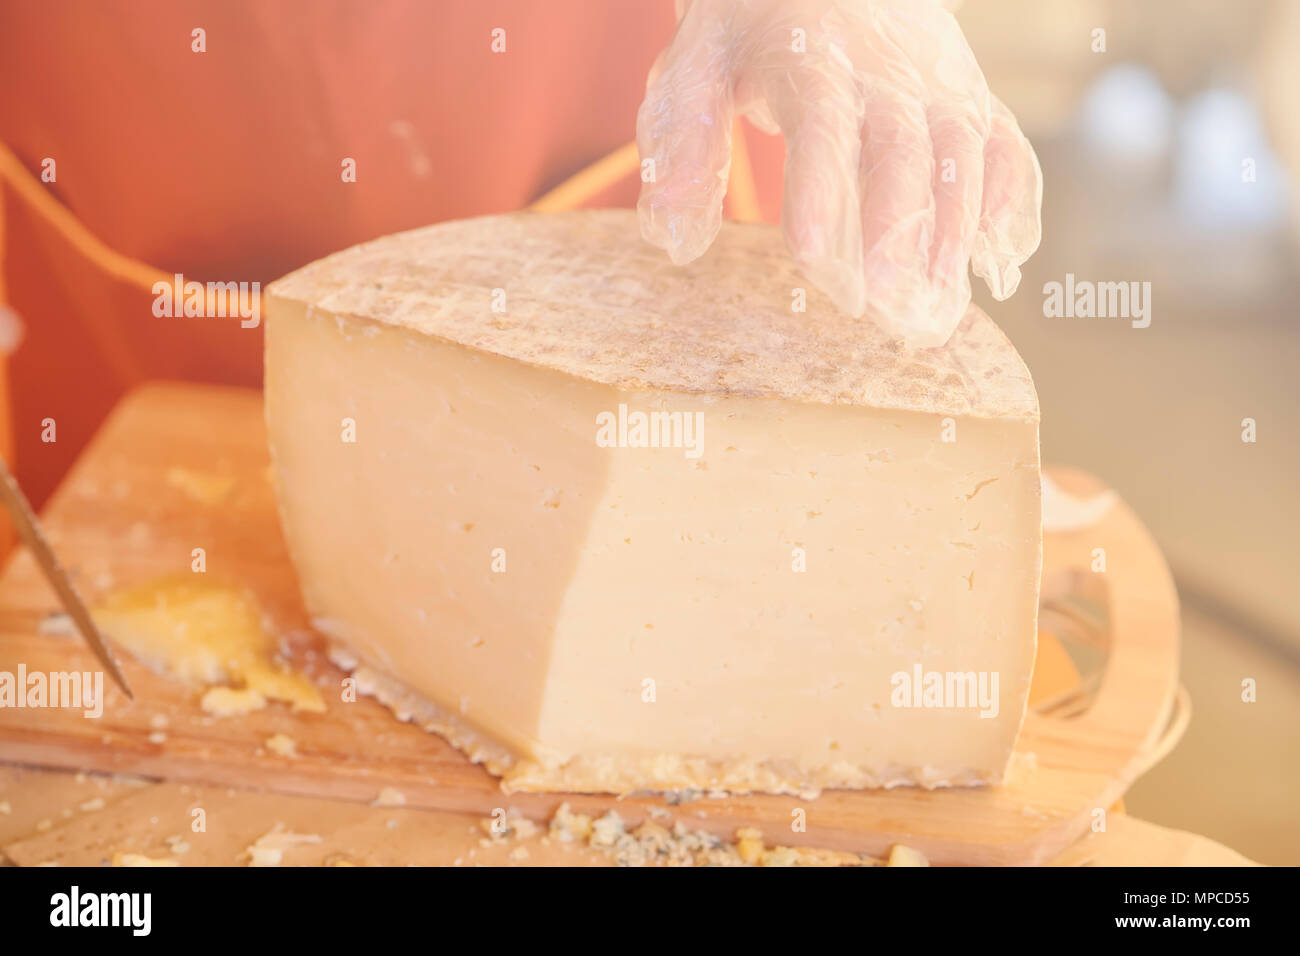 Die Hände des Verkäufers in Handschuhen und die Hälfte von einem großen Kopf von Käse close-up, Holz- Board. Selektive konzentrieren. Gastronomische Milchprodukte, realen Szene, essen Markt Stockfoto